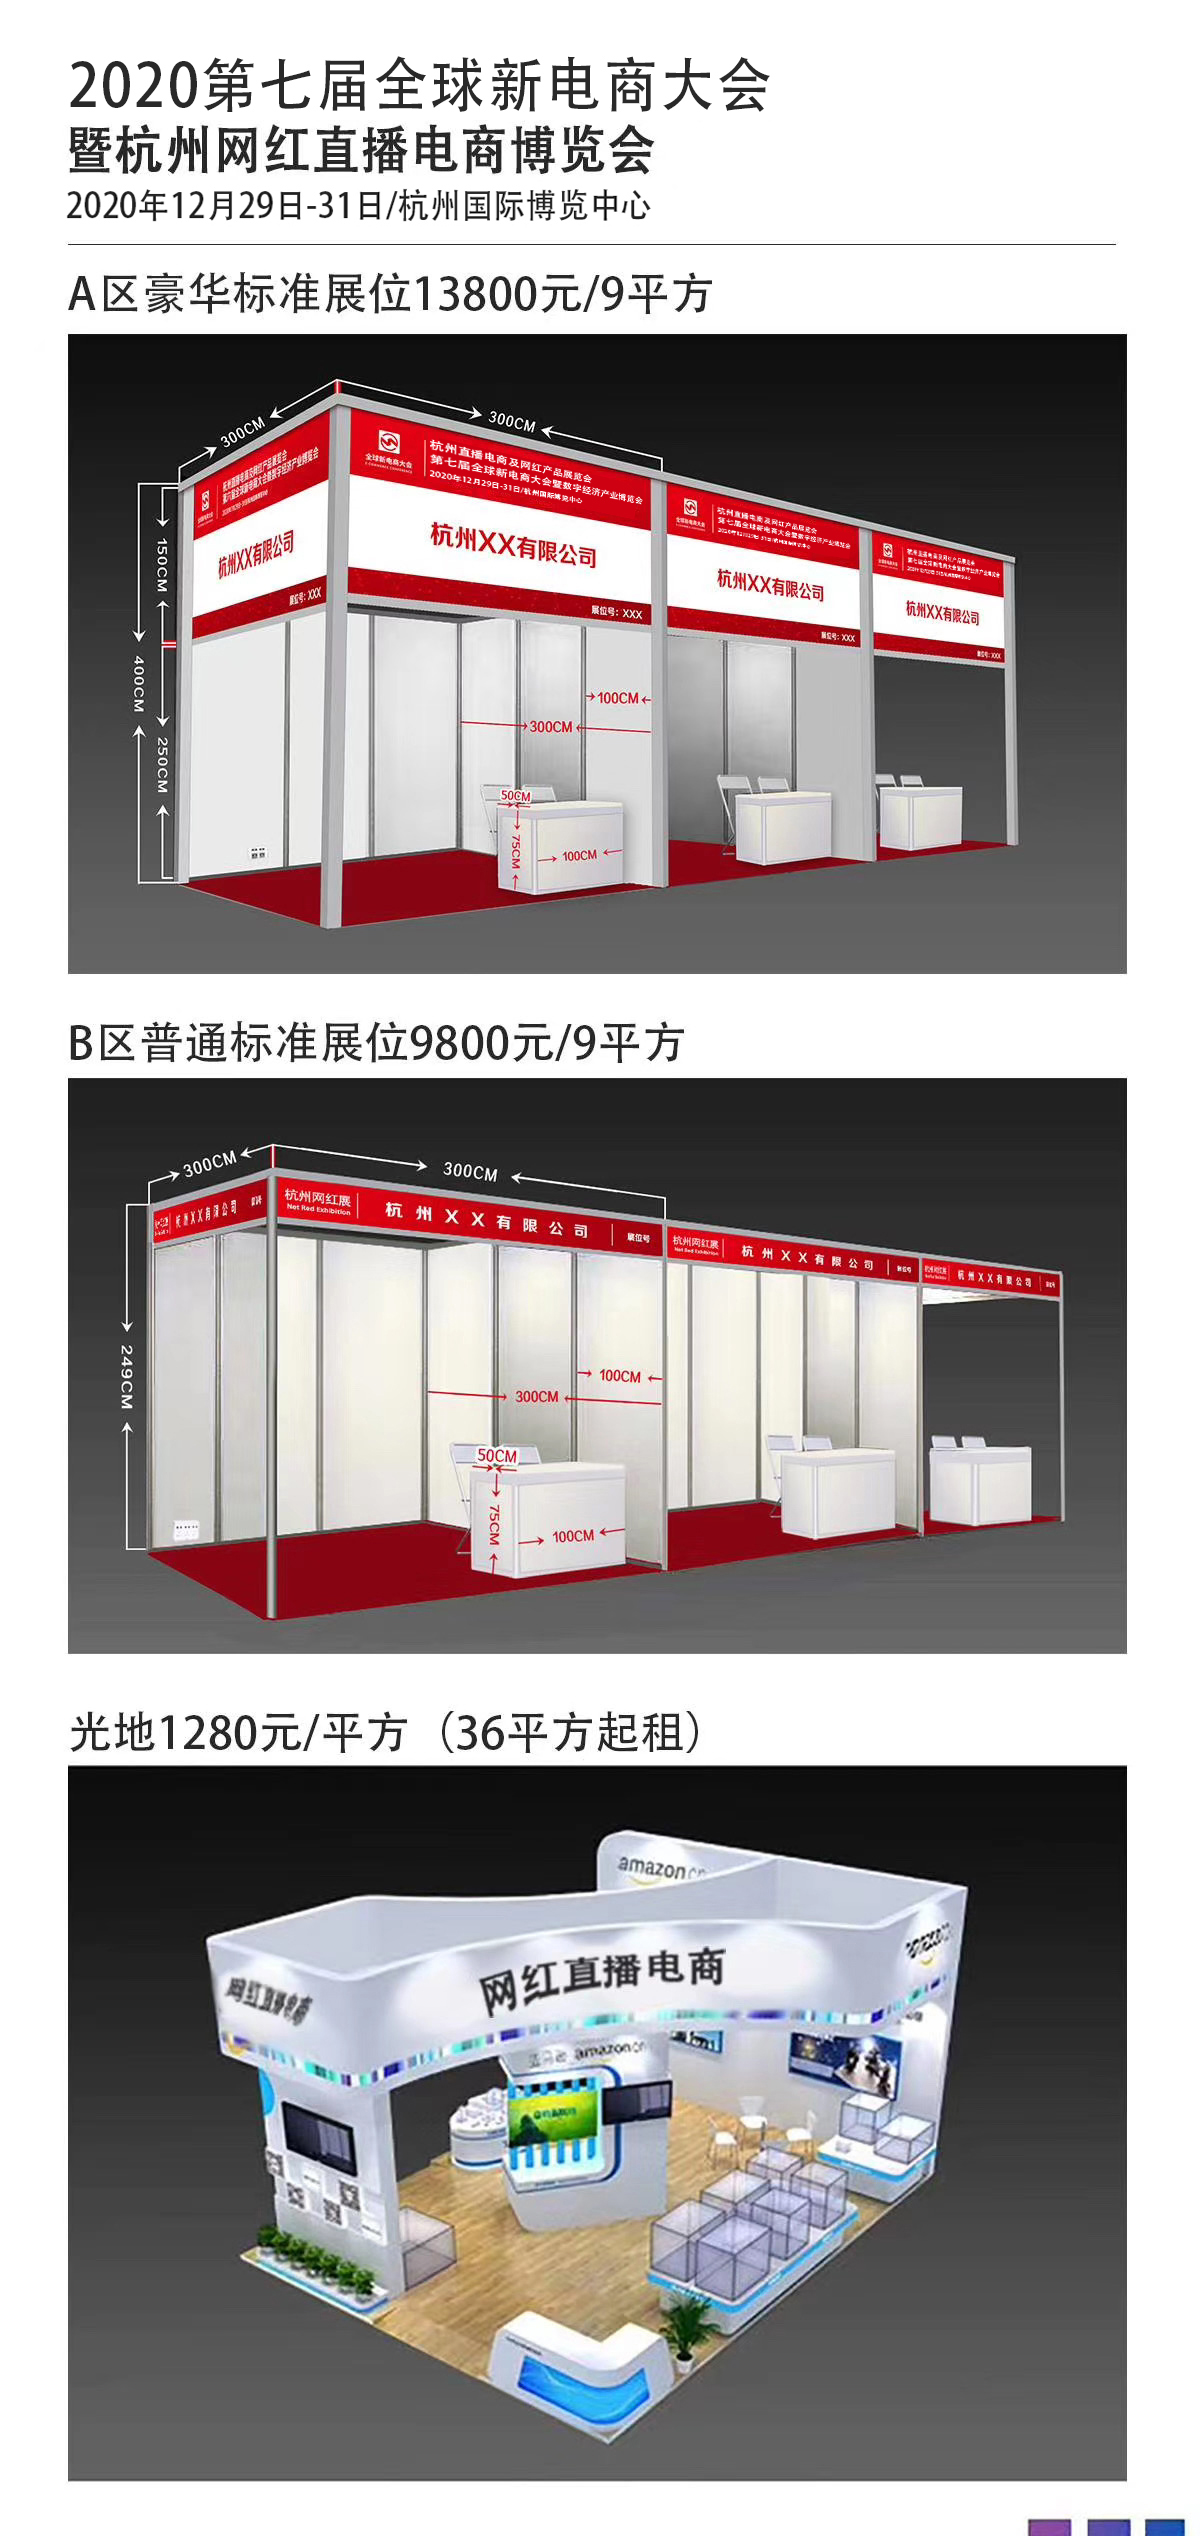 2020第六届杭州直播电商及网红产品博览会